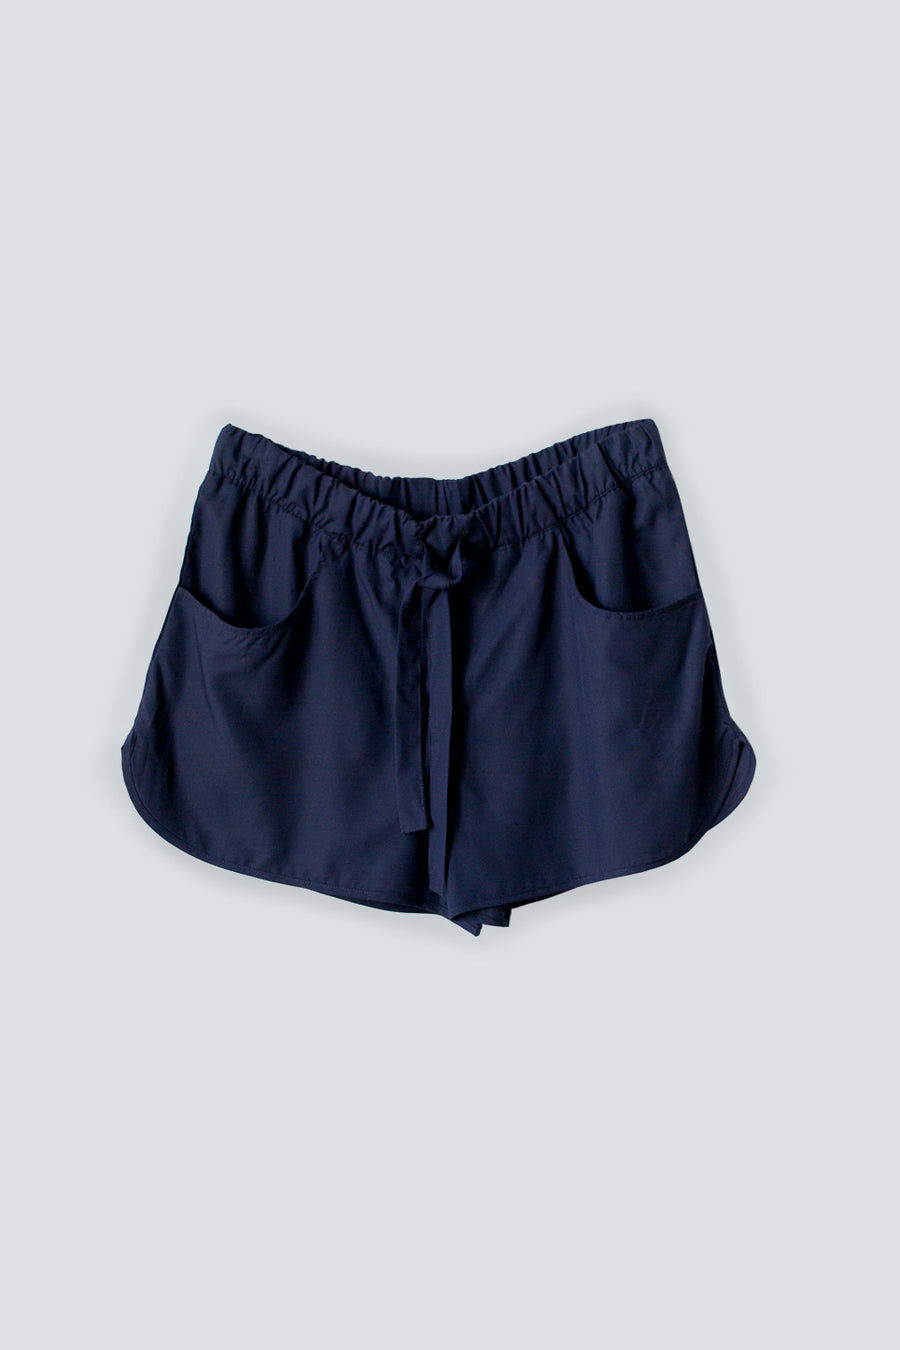 Lightweight navy tencel women's summer shorts with drawstring waist